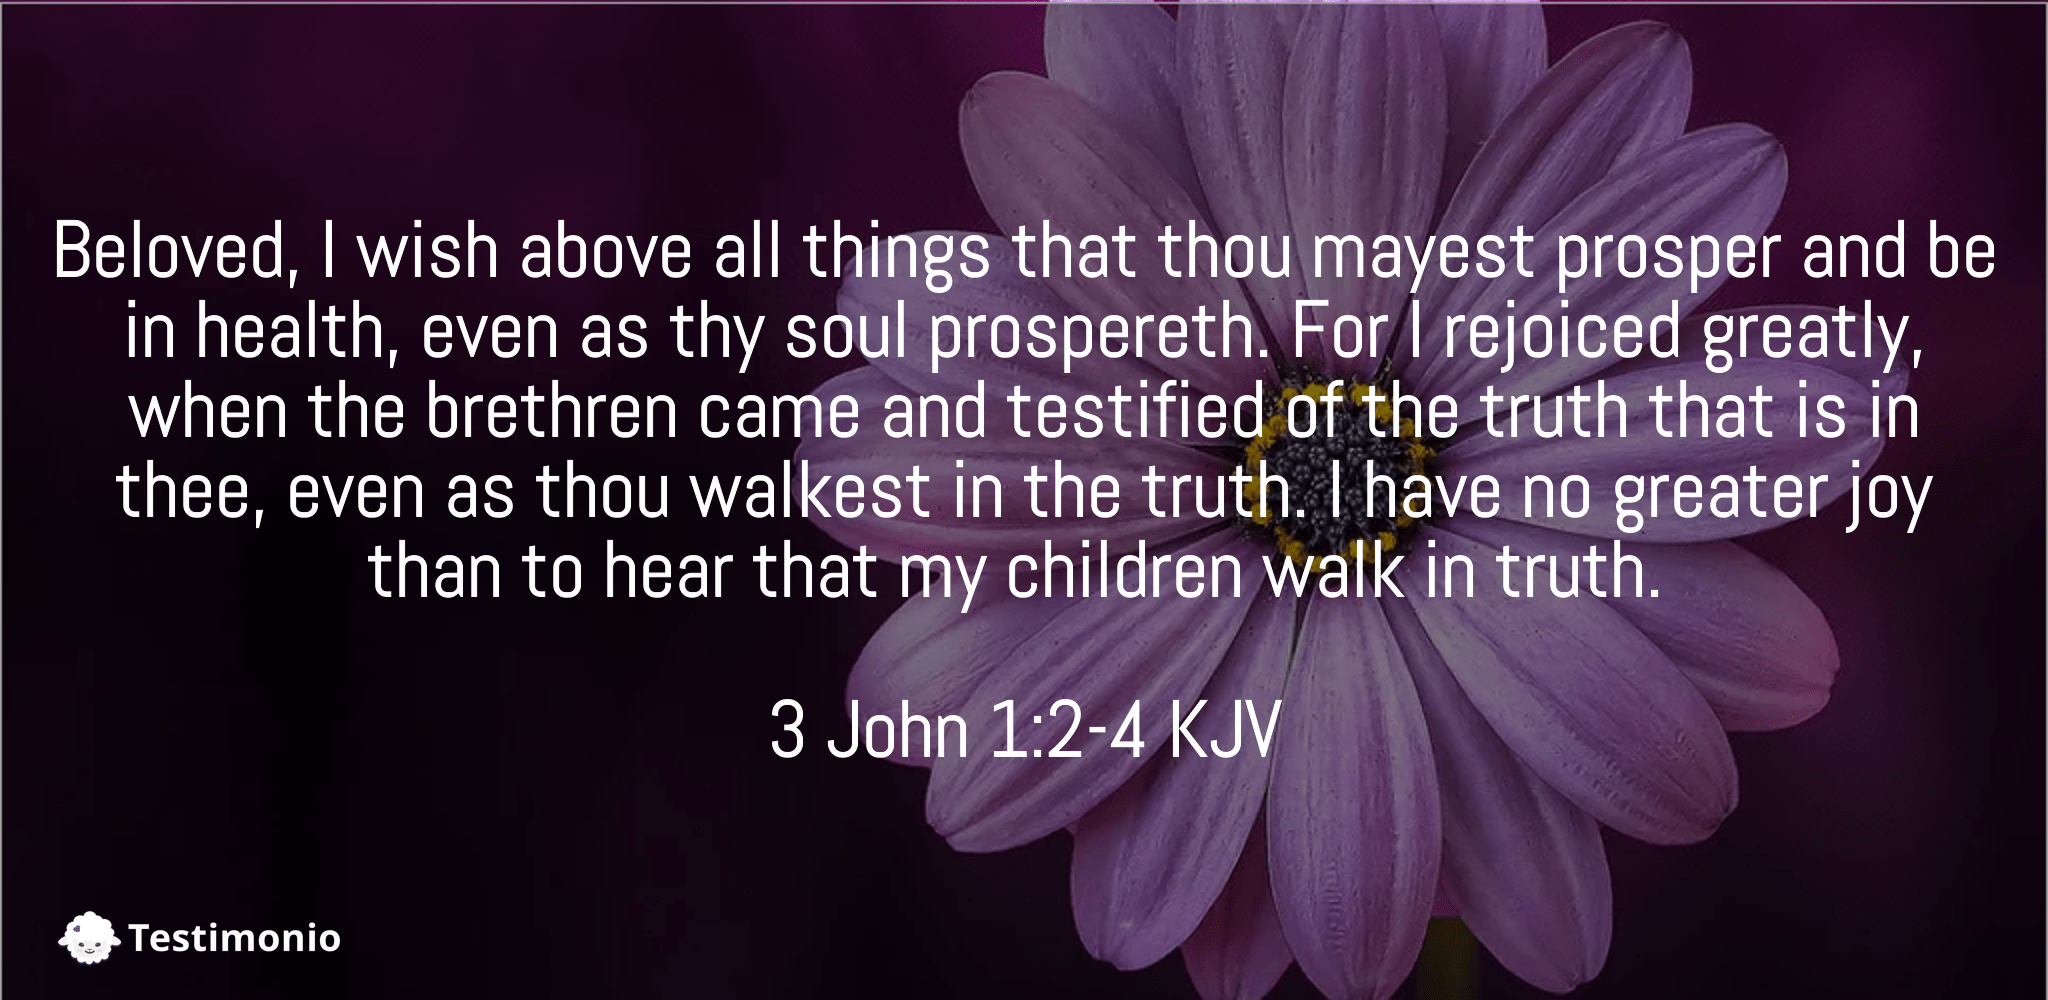 3 John 1:2-4